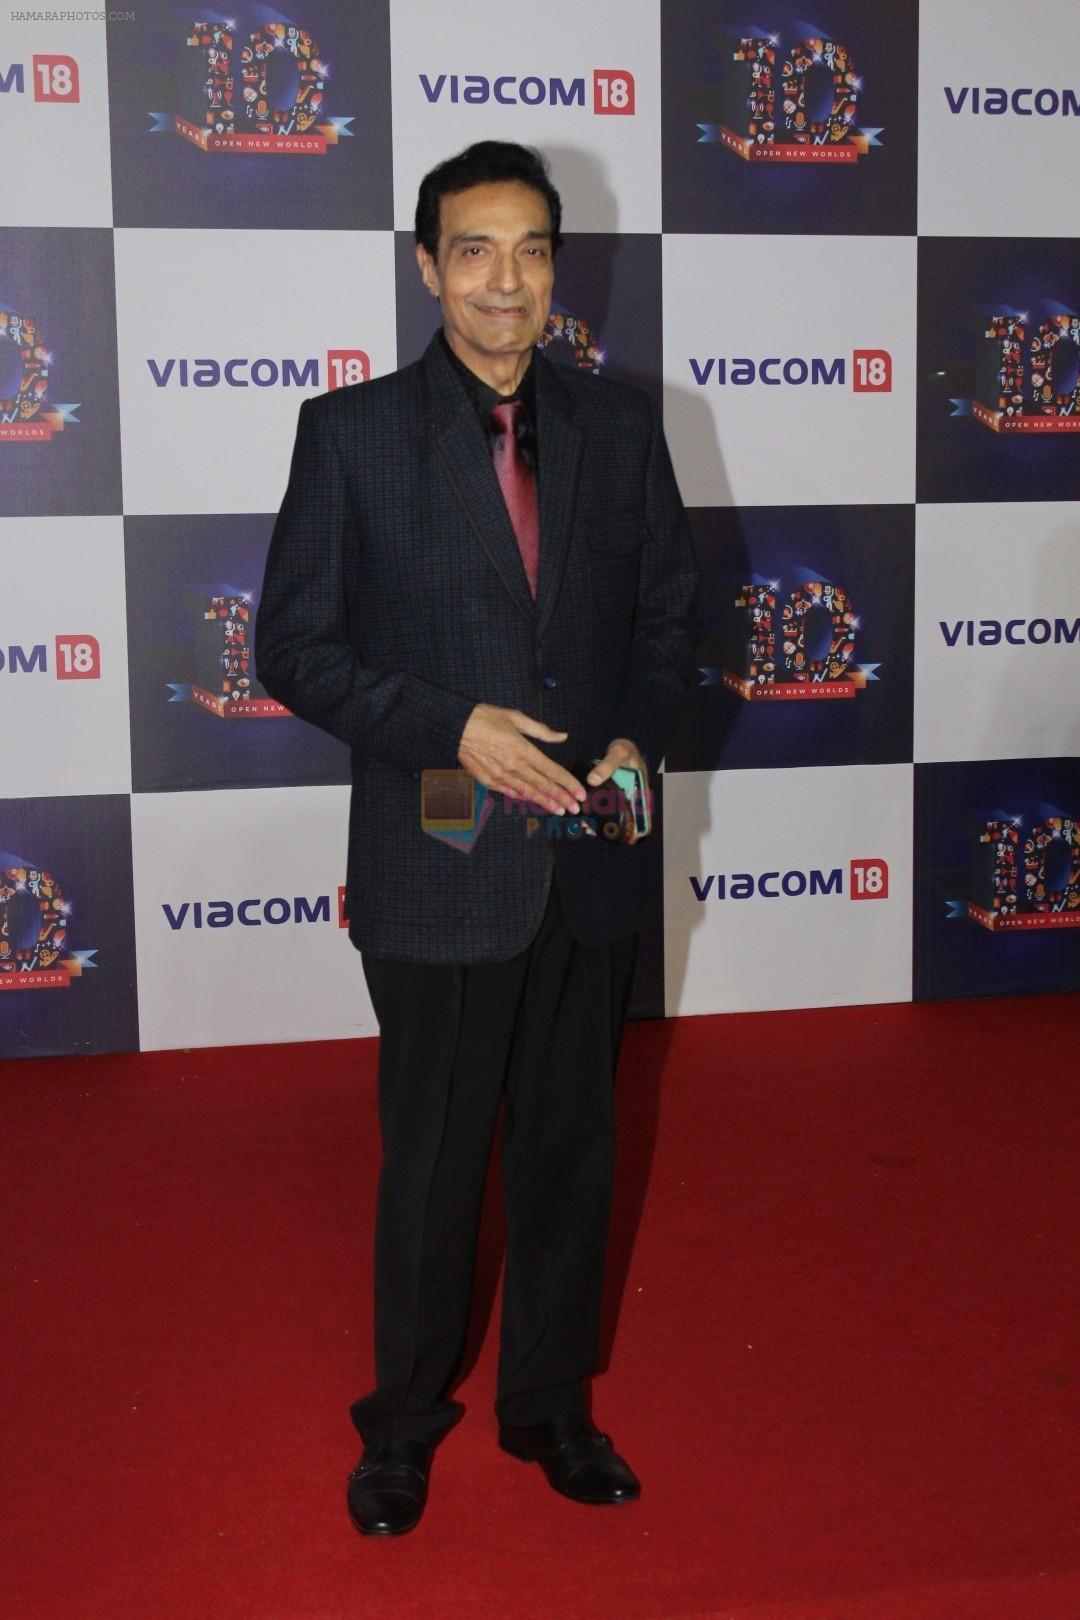 Dheeraj Kumar at The Red Carpet Of Viacom18 10yrs Anniversary on 17th Nov 2017